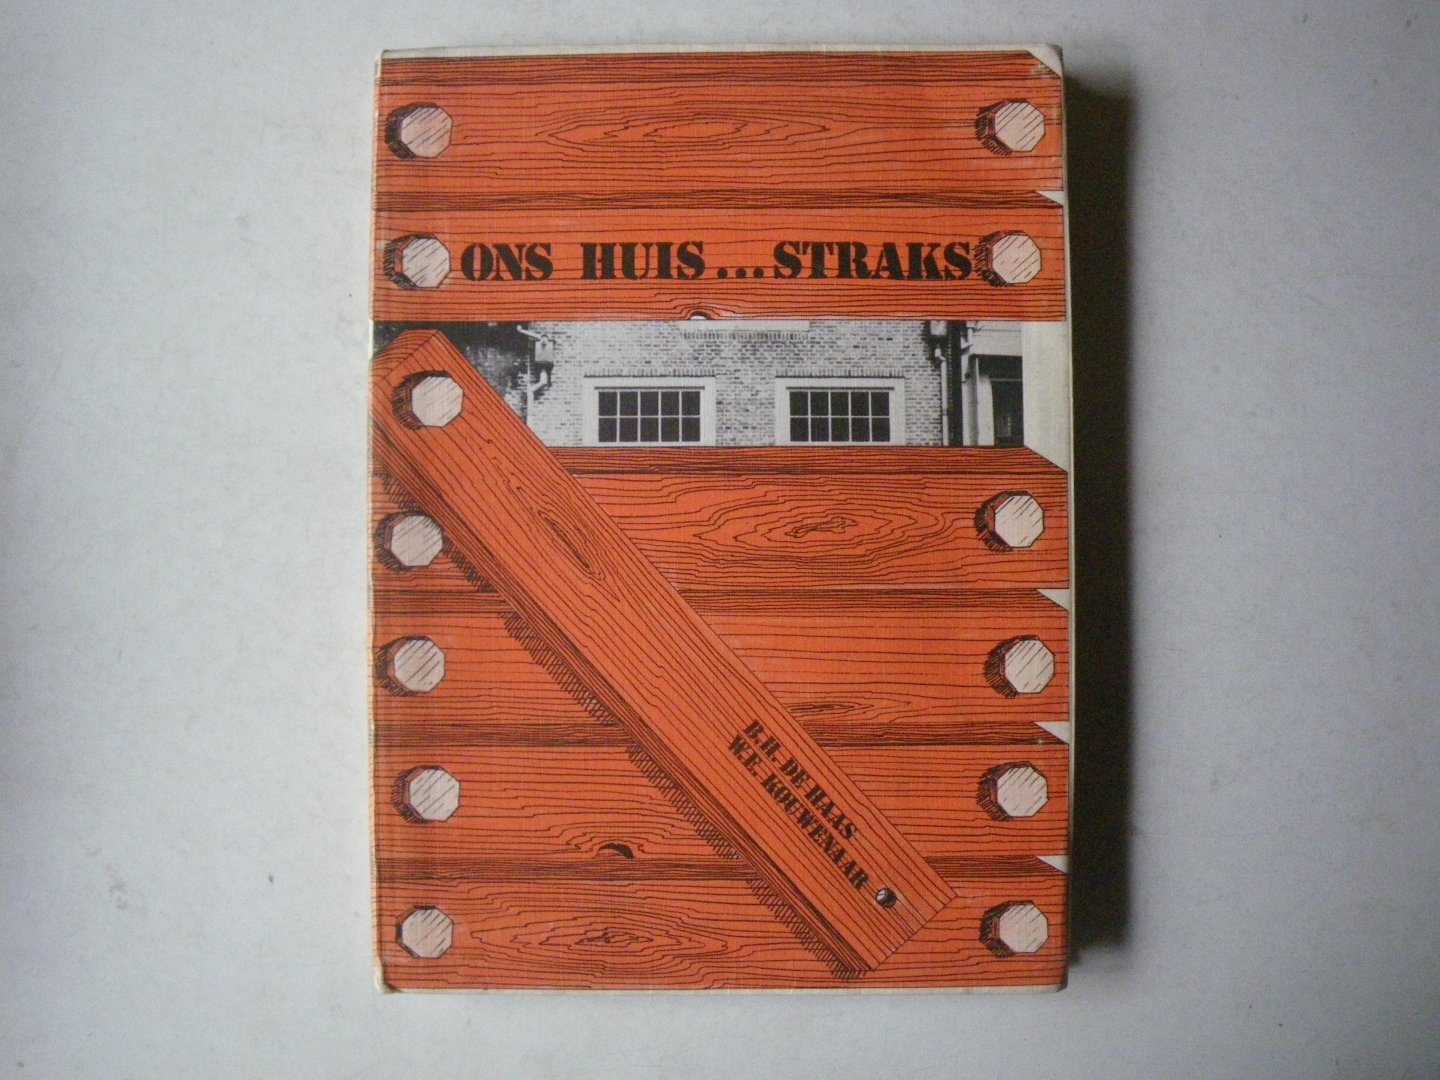 B.H. de Haas - W.E. Kouwenaar - Ons huis...straks